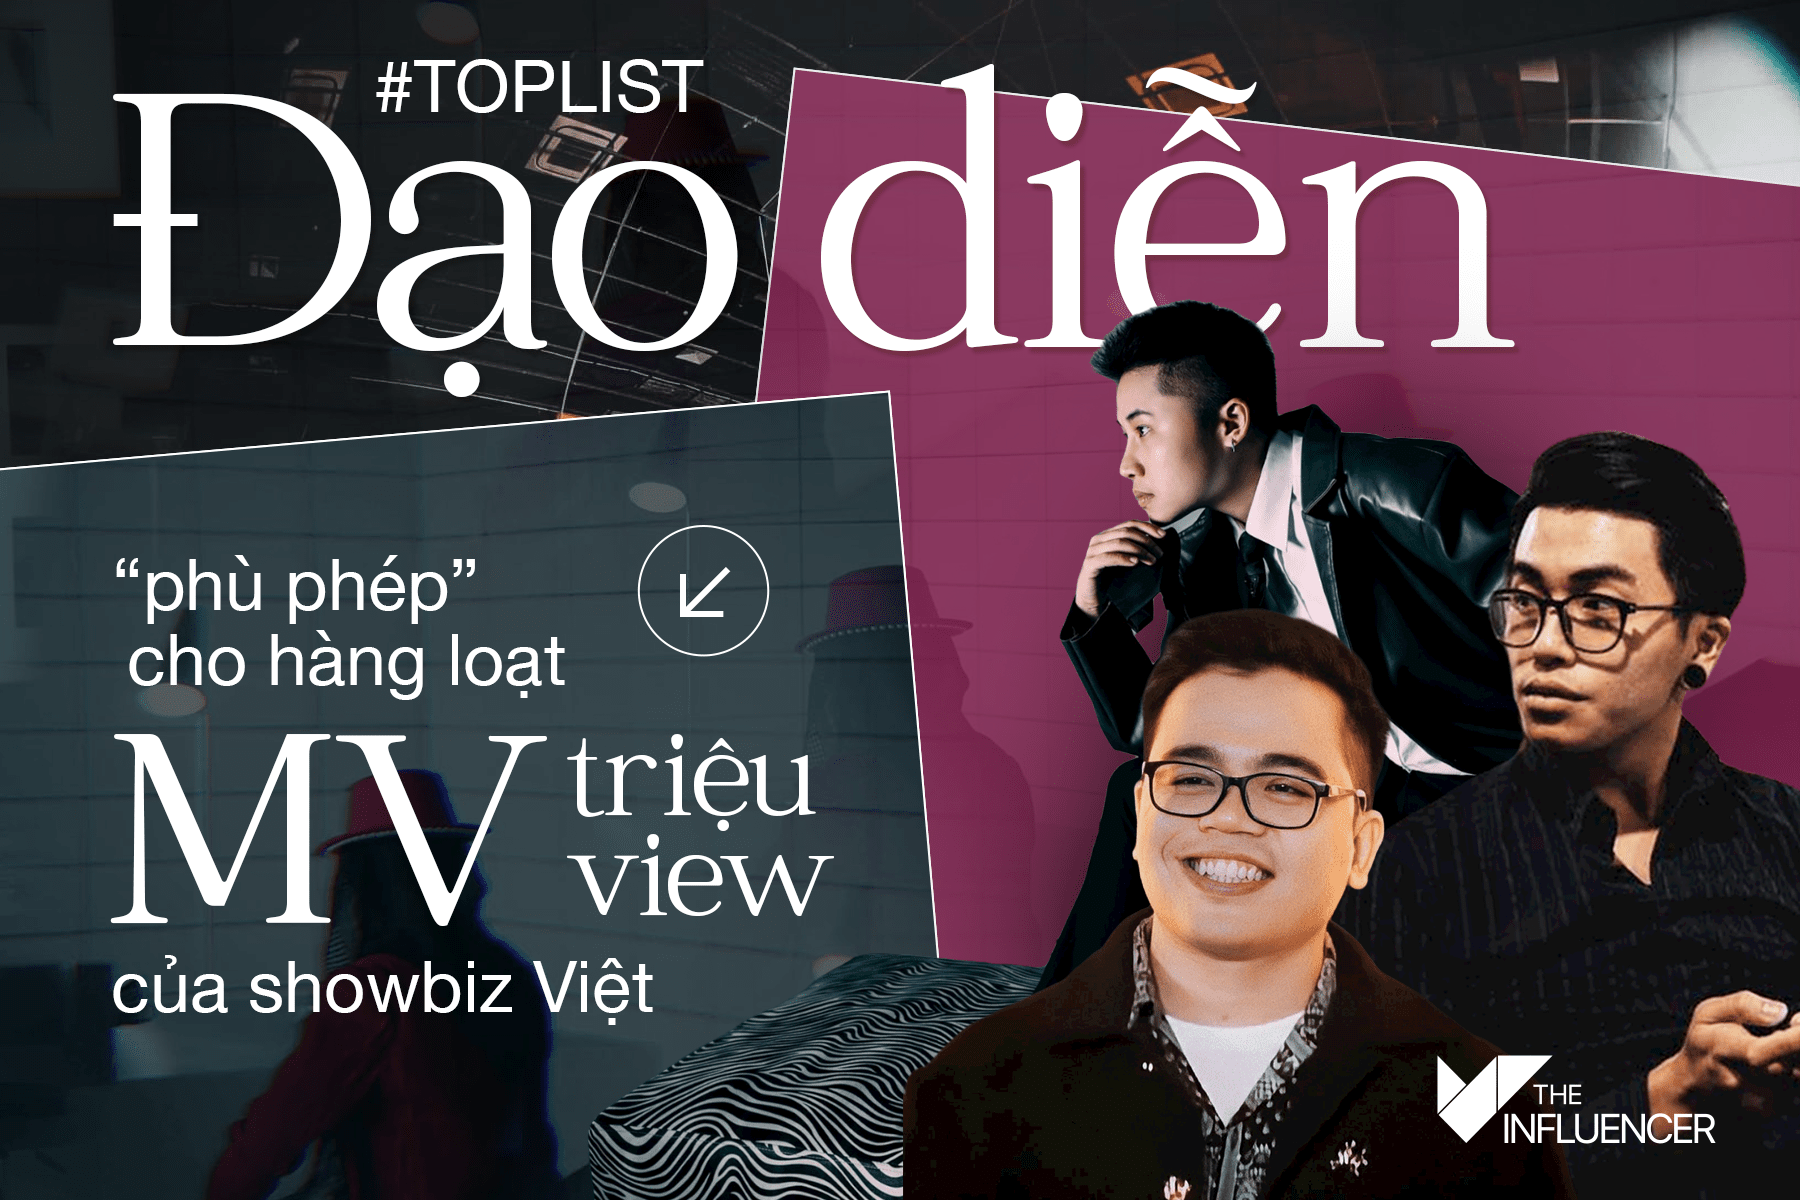 #Toplist Đạo diễn “phù phép” cho hàng loạt MV triệu view của showbiz Việt